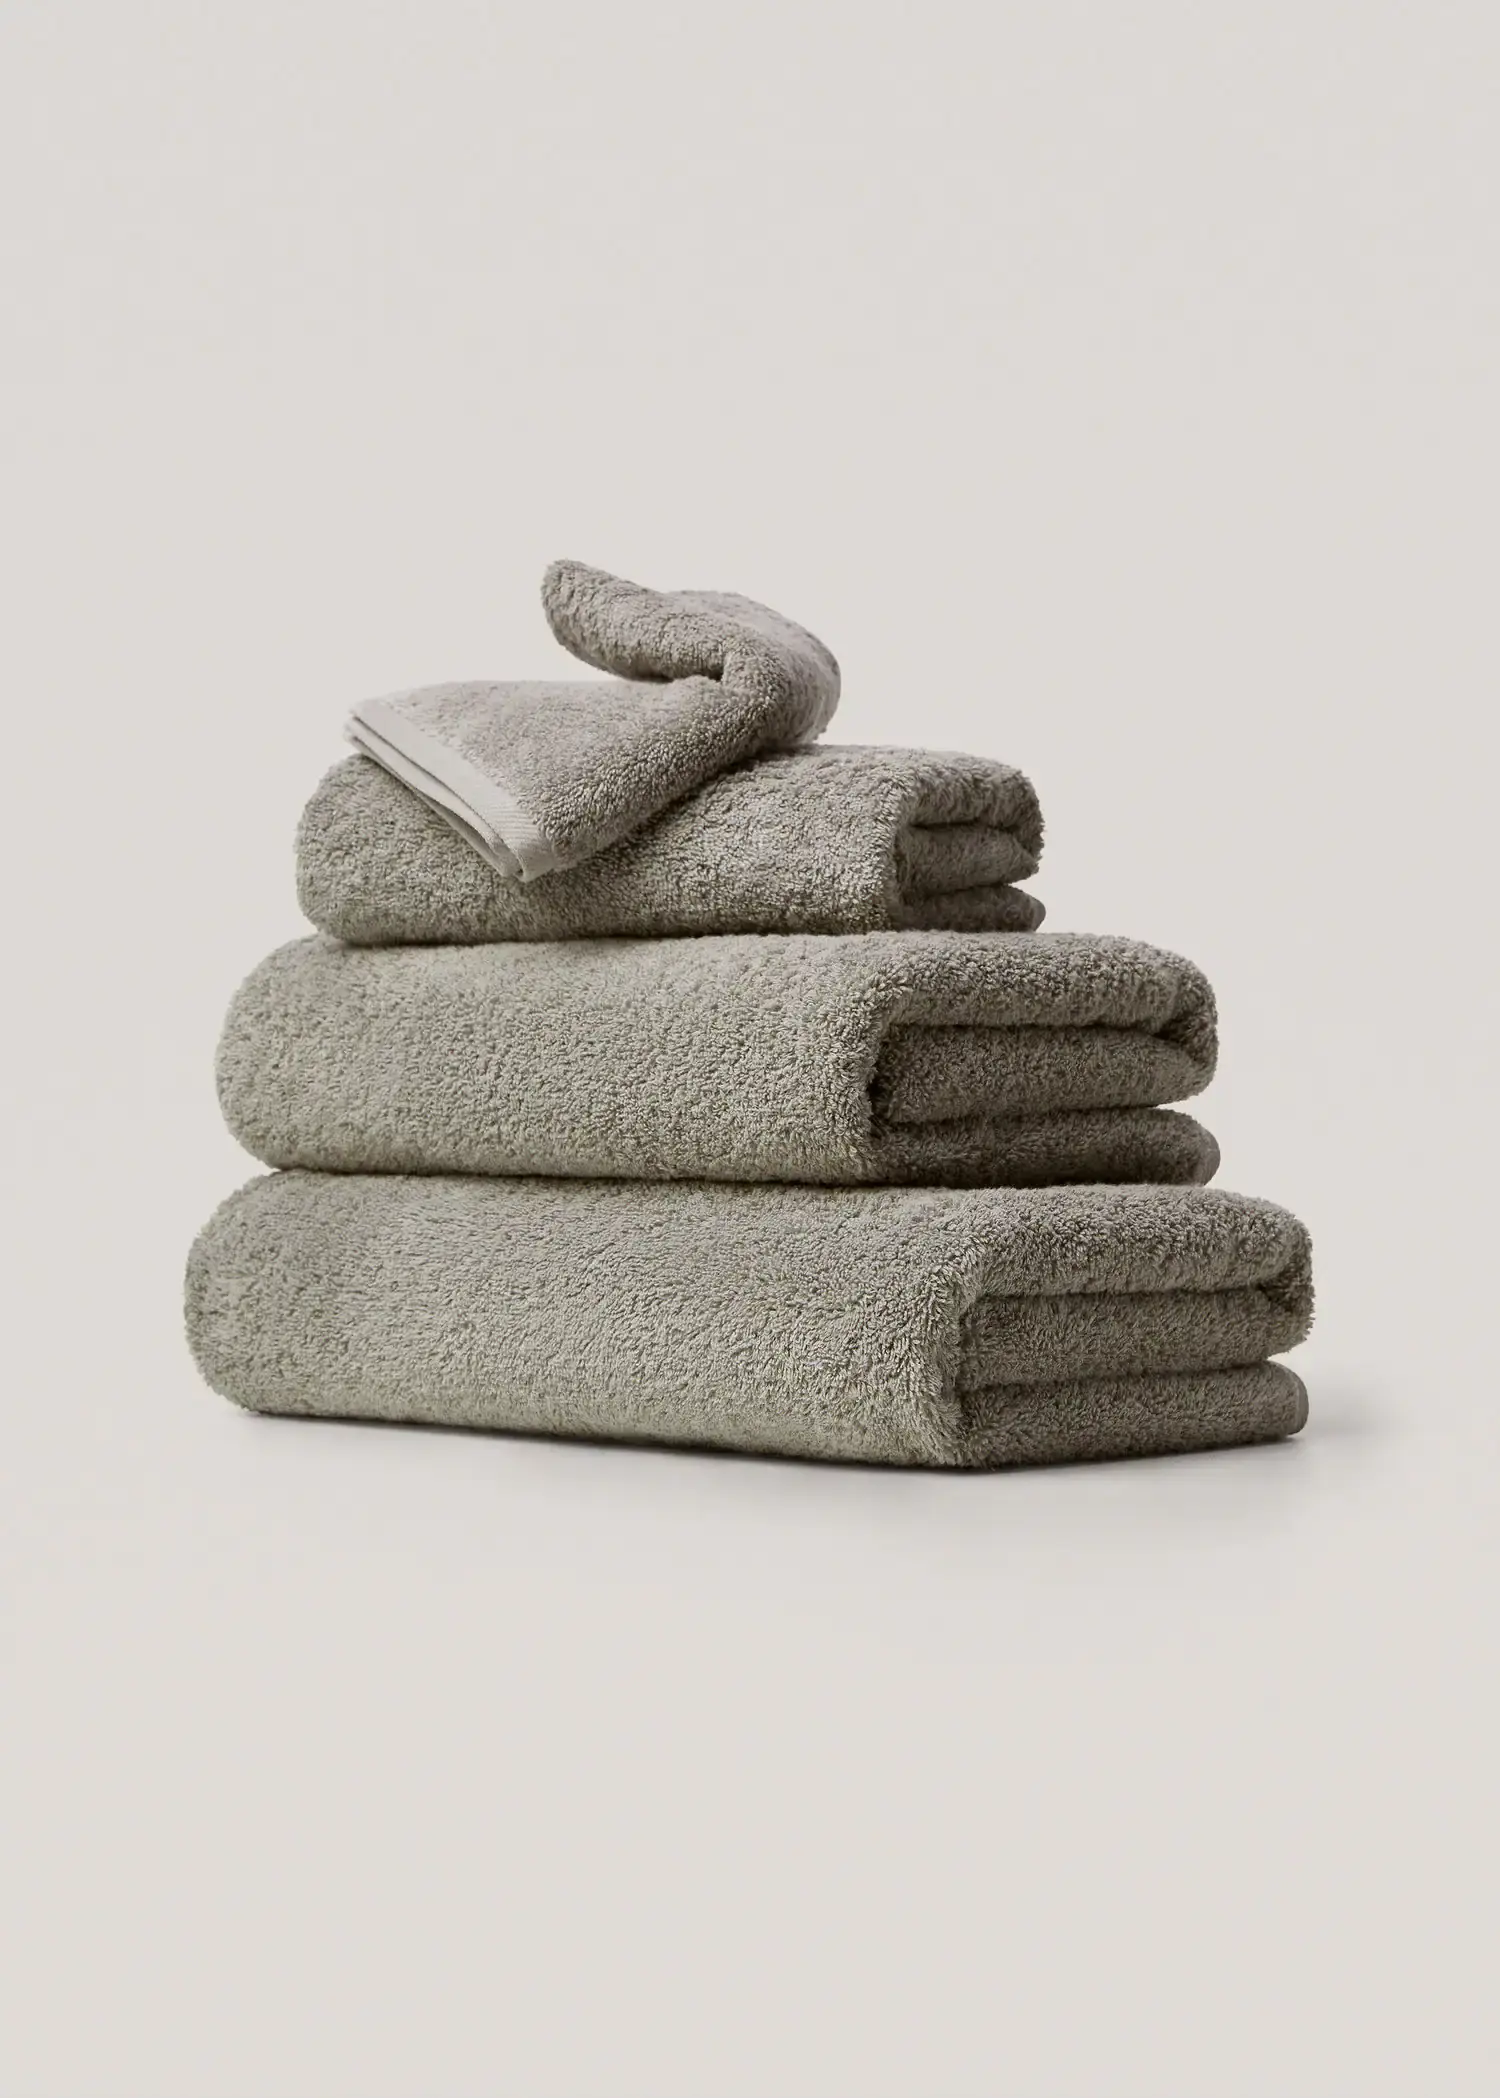 Mango 600gr/m2 cotton face towel 30x50cm. 1